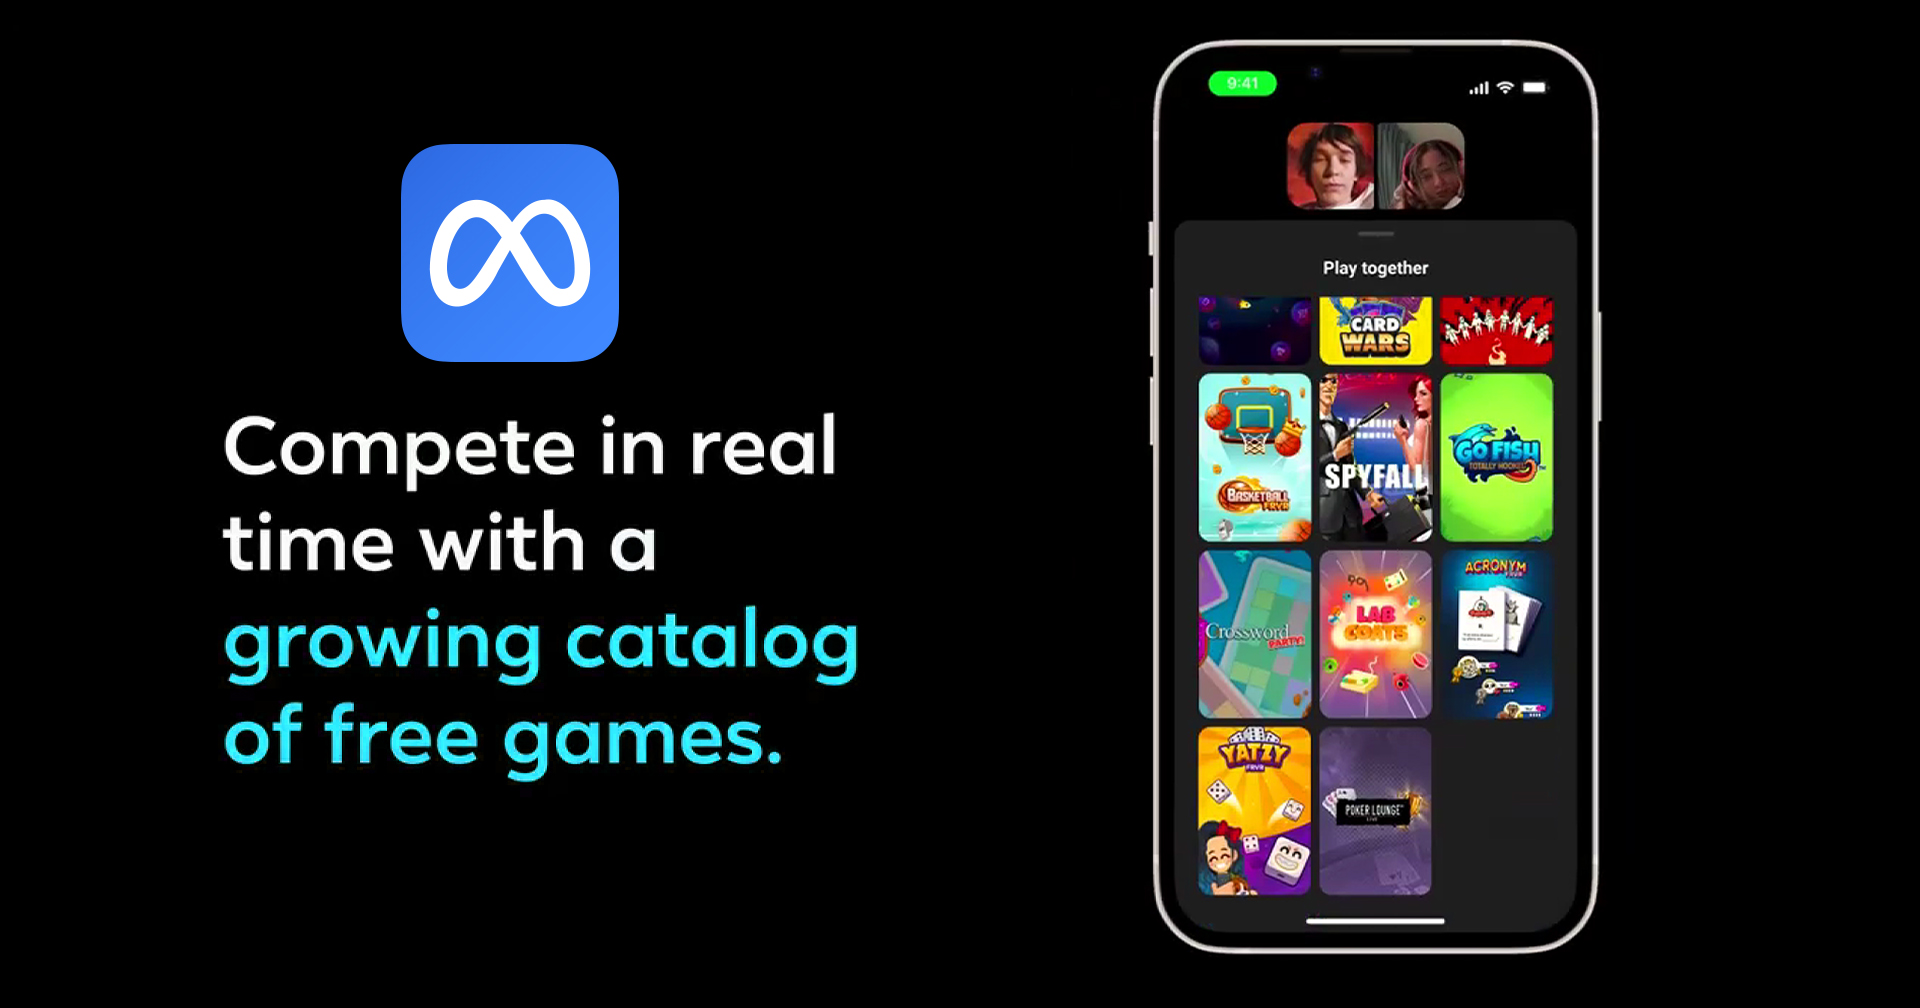 Meta เพิ่มเกมใหม่ 14 เกมบน Messenger สามารถเล่นขณะวิดีโอคอลกับเพื่อนได้